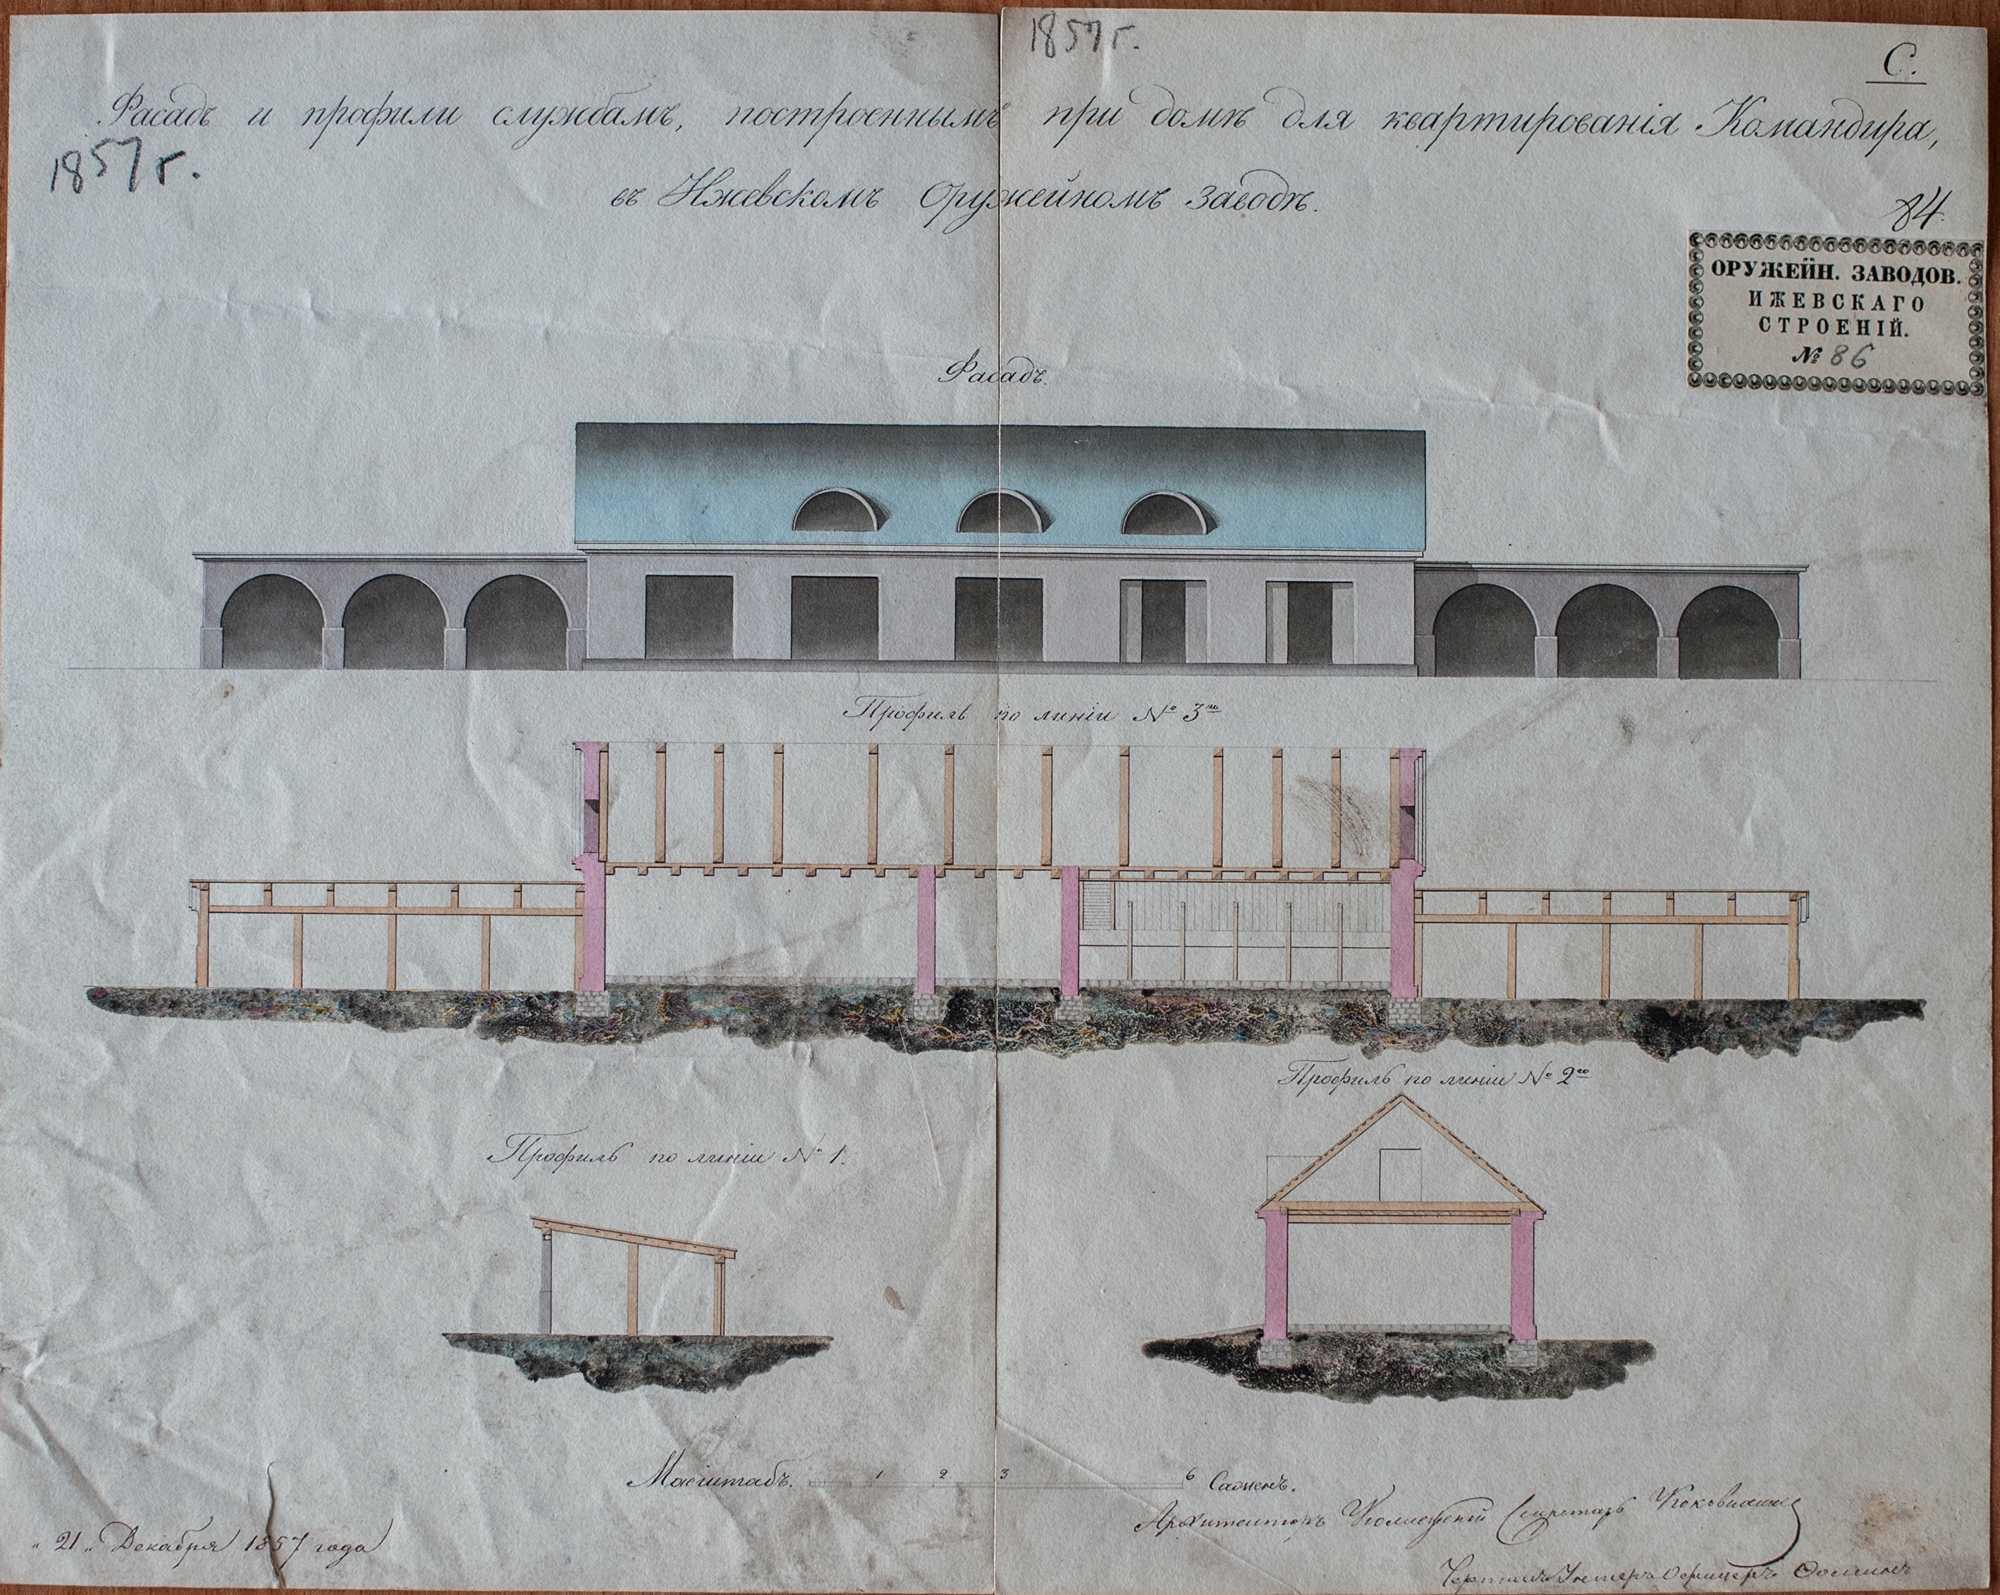 «Фасад и профили службам, построенным при доме для квартирования Командира в Ижевском оружейном заводе». 1857